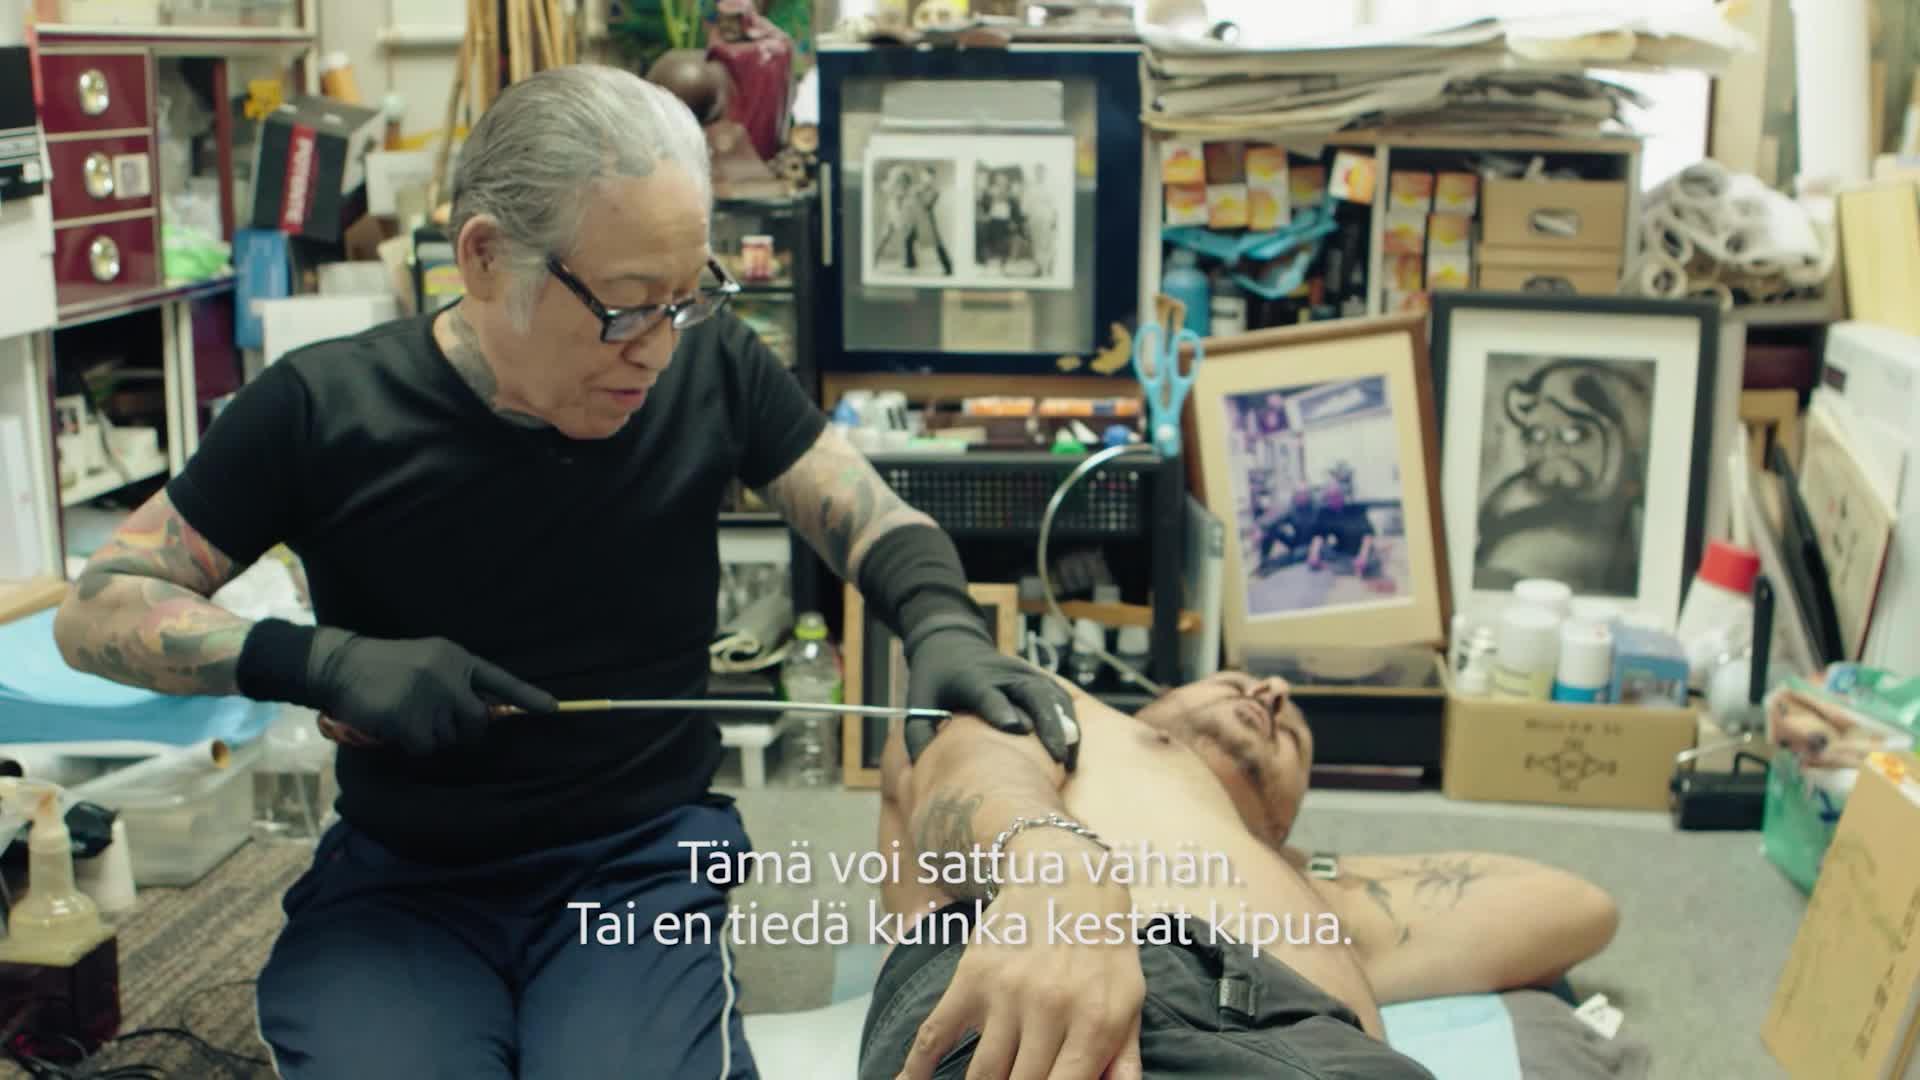 Arman tatuoidaan Japanissa äärimmäisen kivuliaalla menetelmällä – kysyy maassa syvästi vaietuista mafiasta